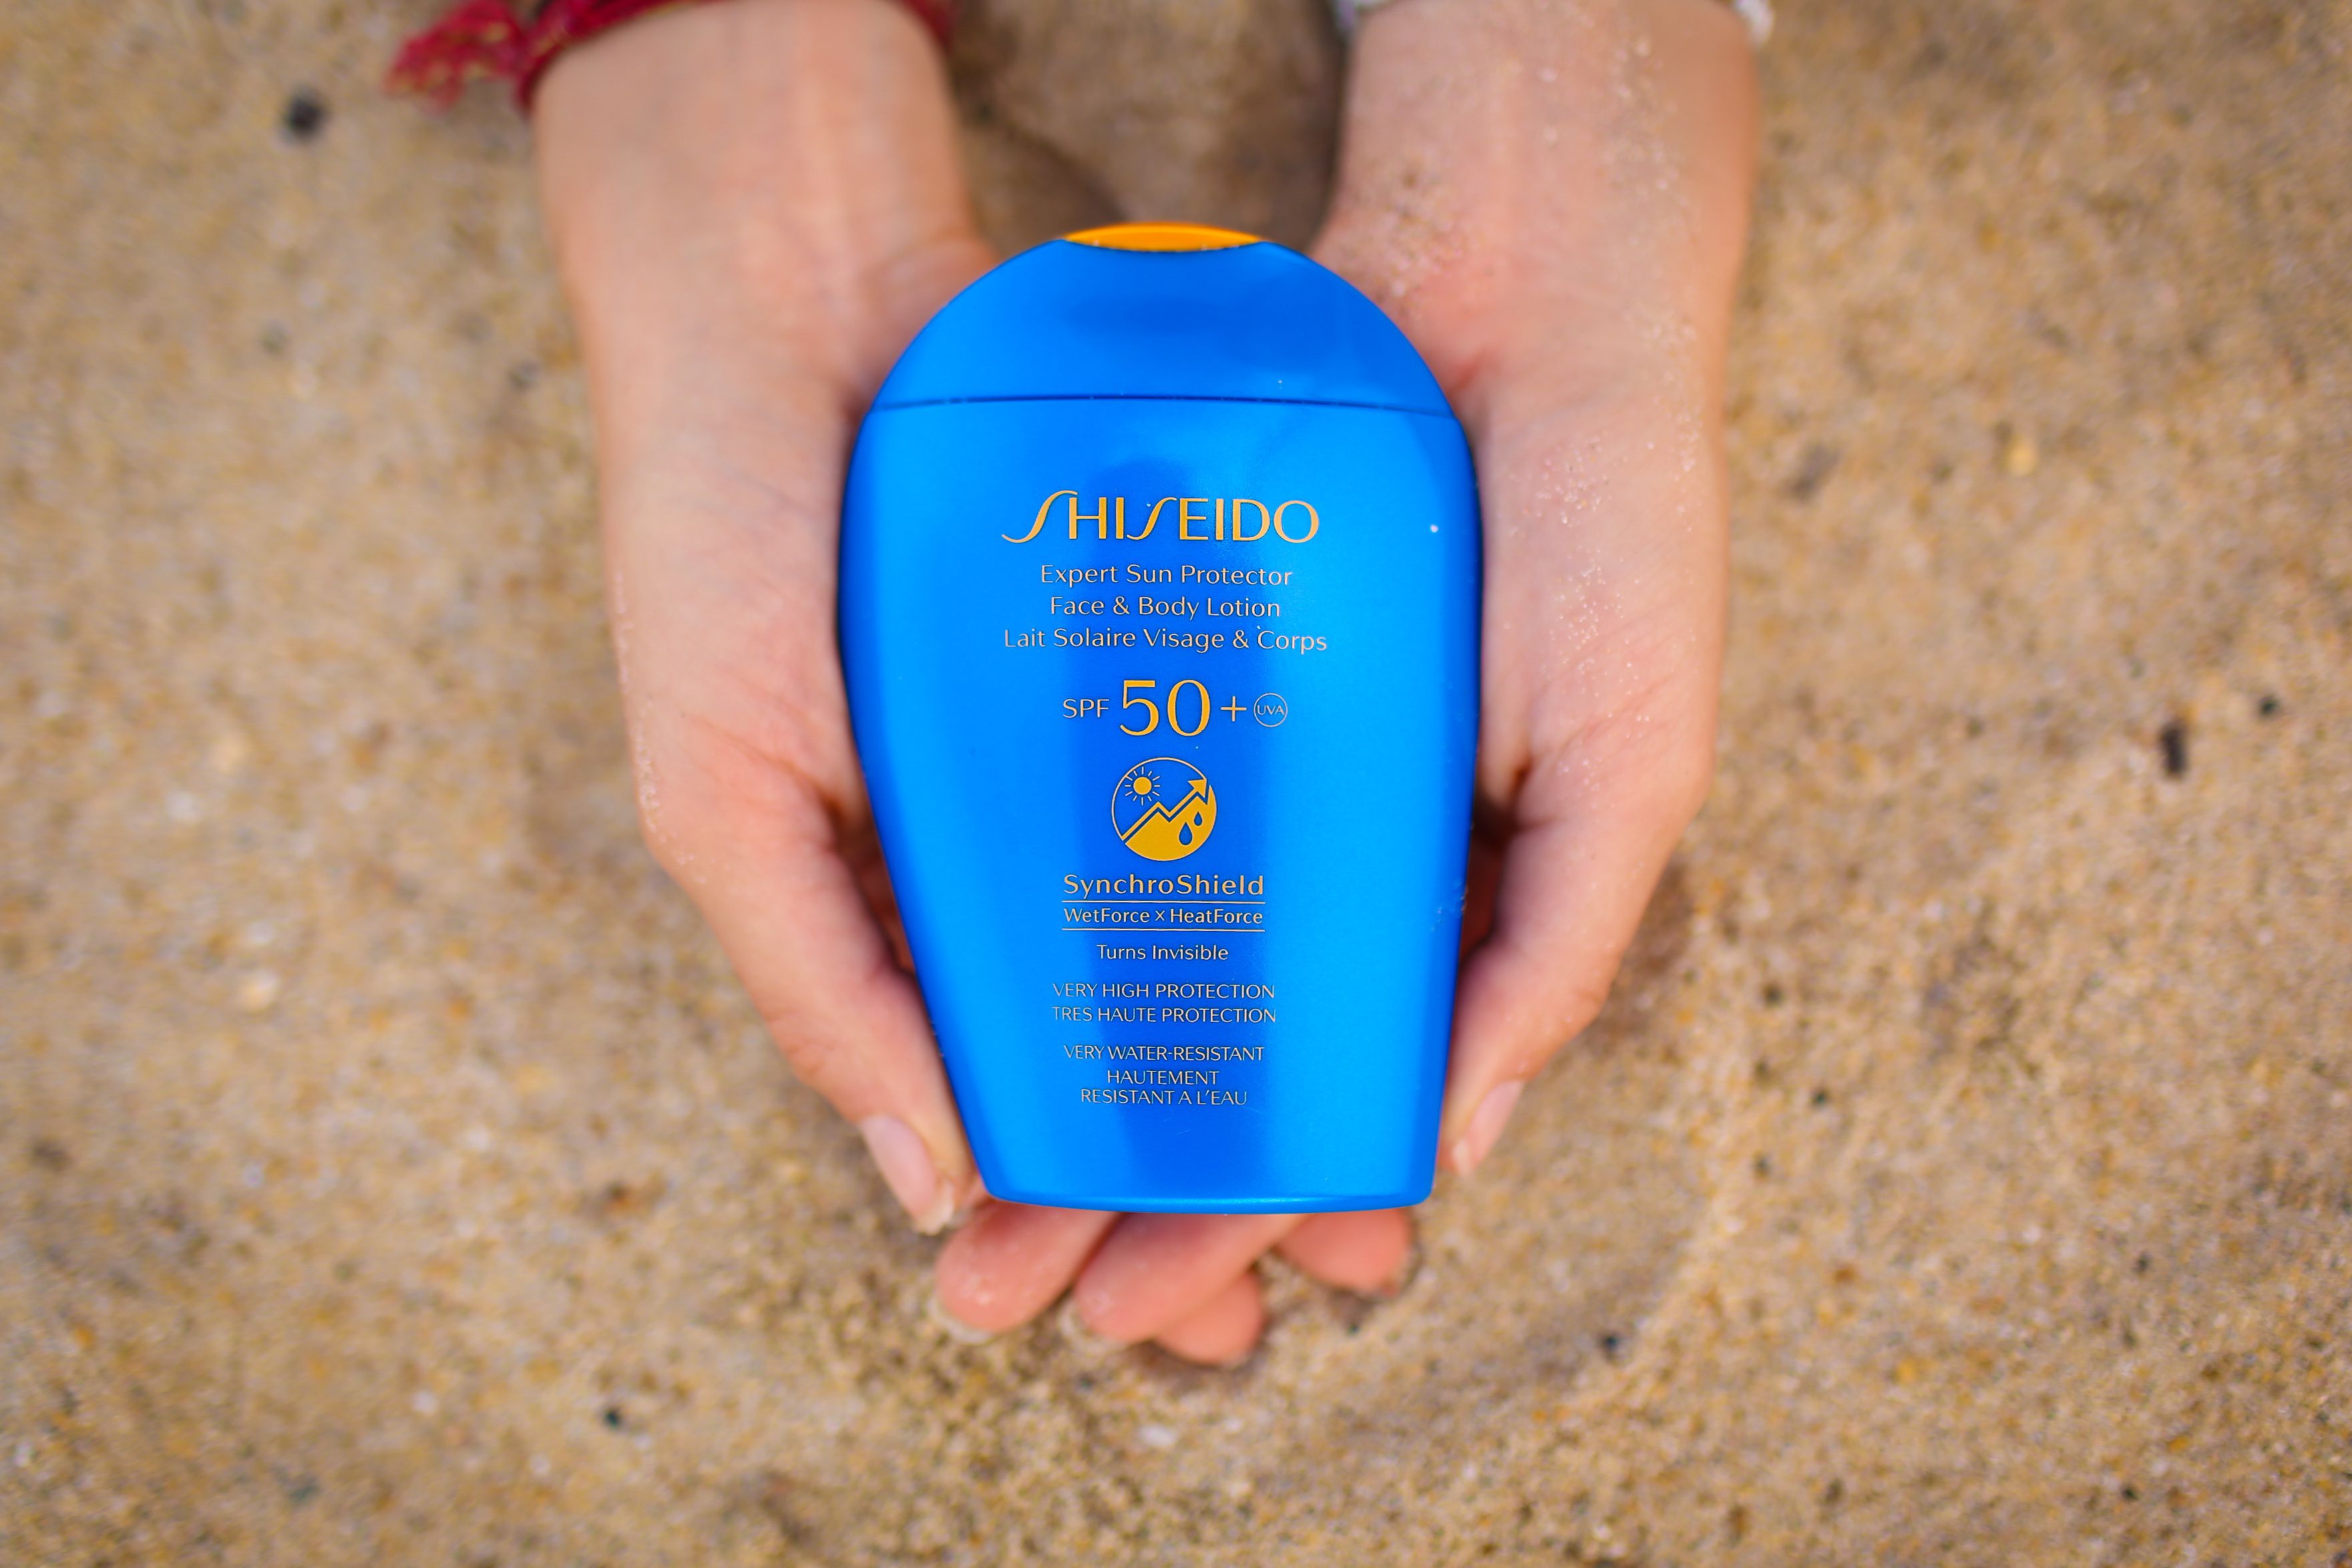 Ne zaboravite na zaštitu od sunca! Shiseido ima proizvode koje štite od zračenja, a ne ostavljaju bijele tragove